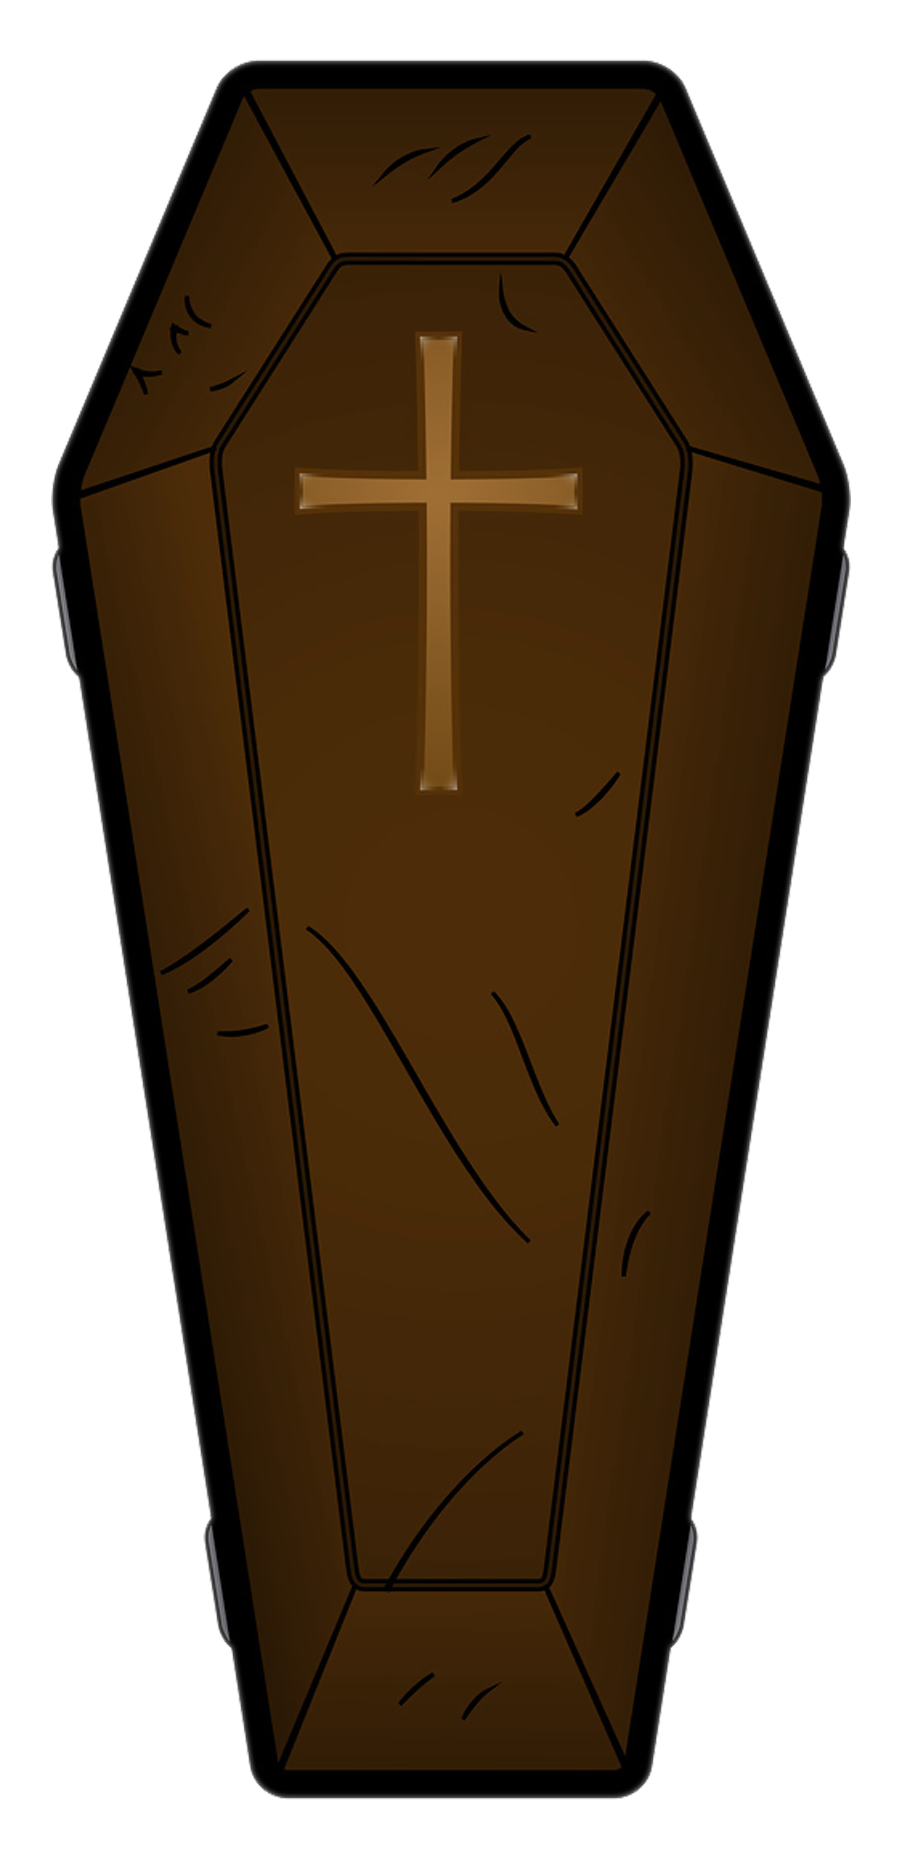 Coffin Clipart Eimdgmain Jpeg